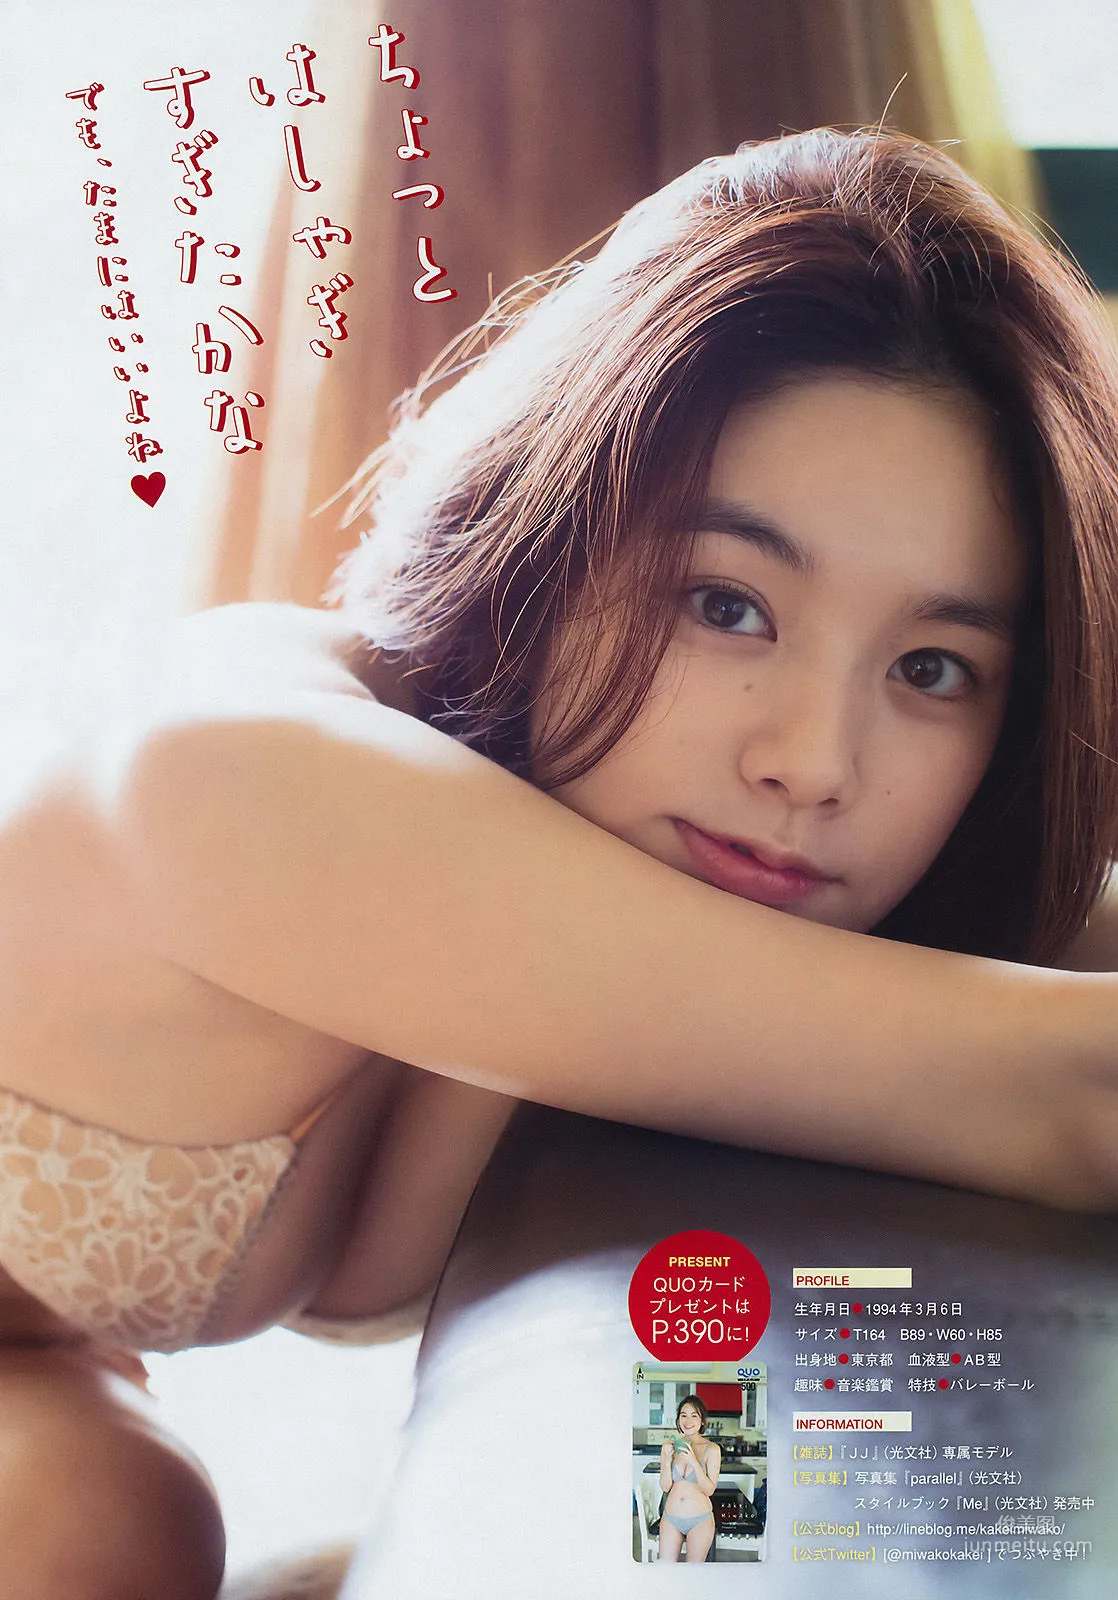 [Young Magazine] 筧美和子 守屋茜 2017年No.12 写真杂志6